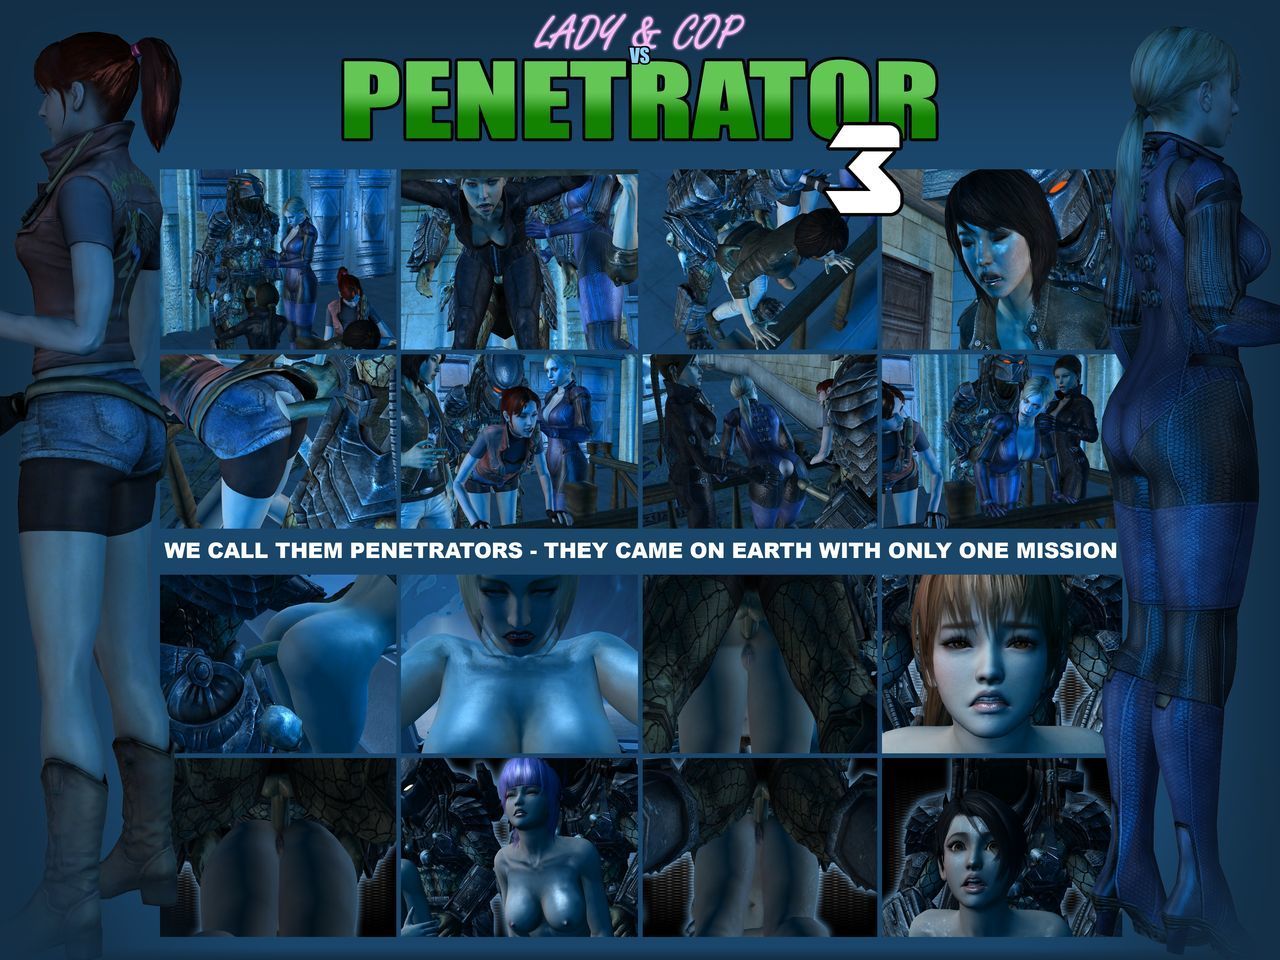 女性 & Cop vs penetrator 3 (preview)